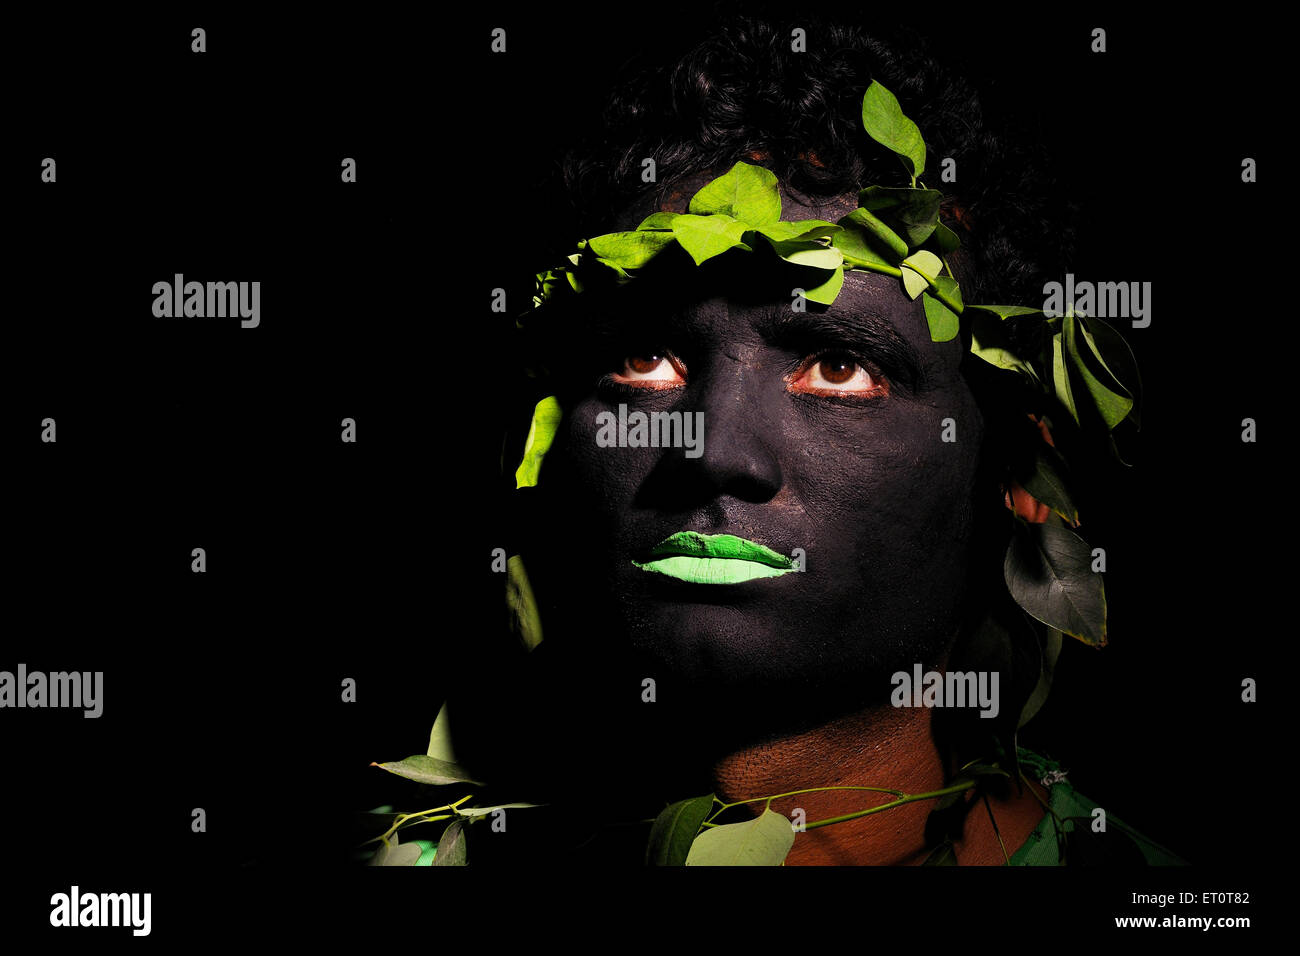 Homme camouflage déguisement camouflage visage tribal peint MR#769G Banque D'Images